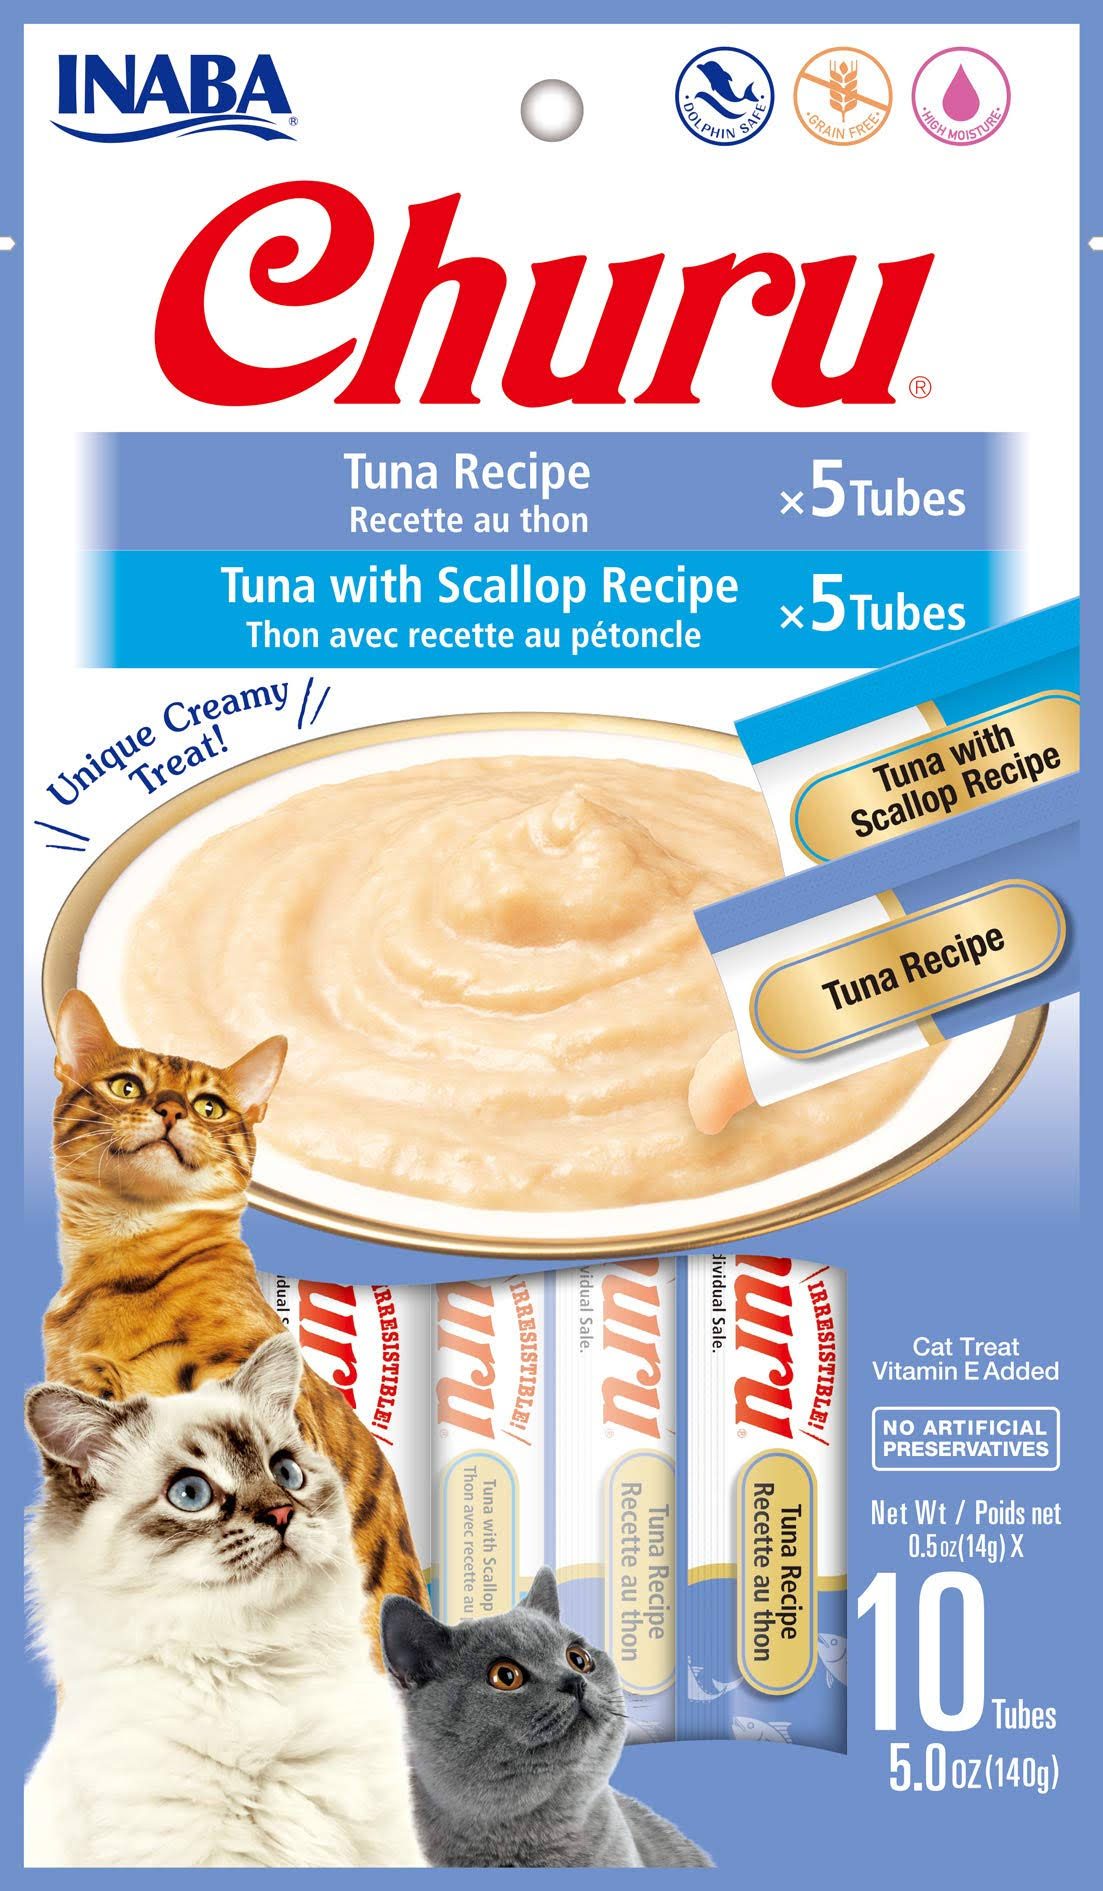 Inaba Churu Tuna Variety Cat Treats